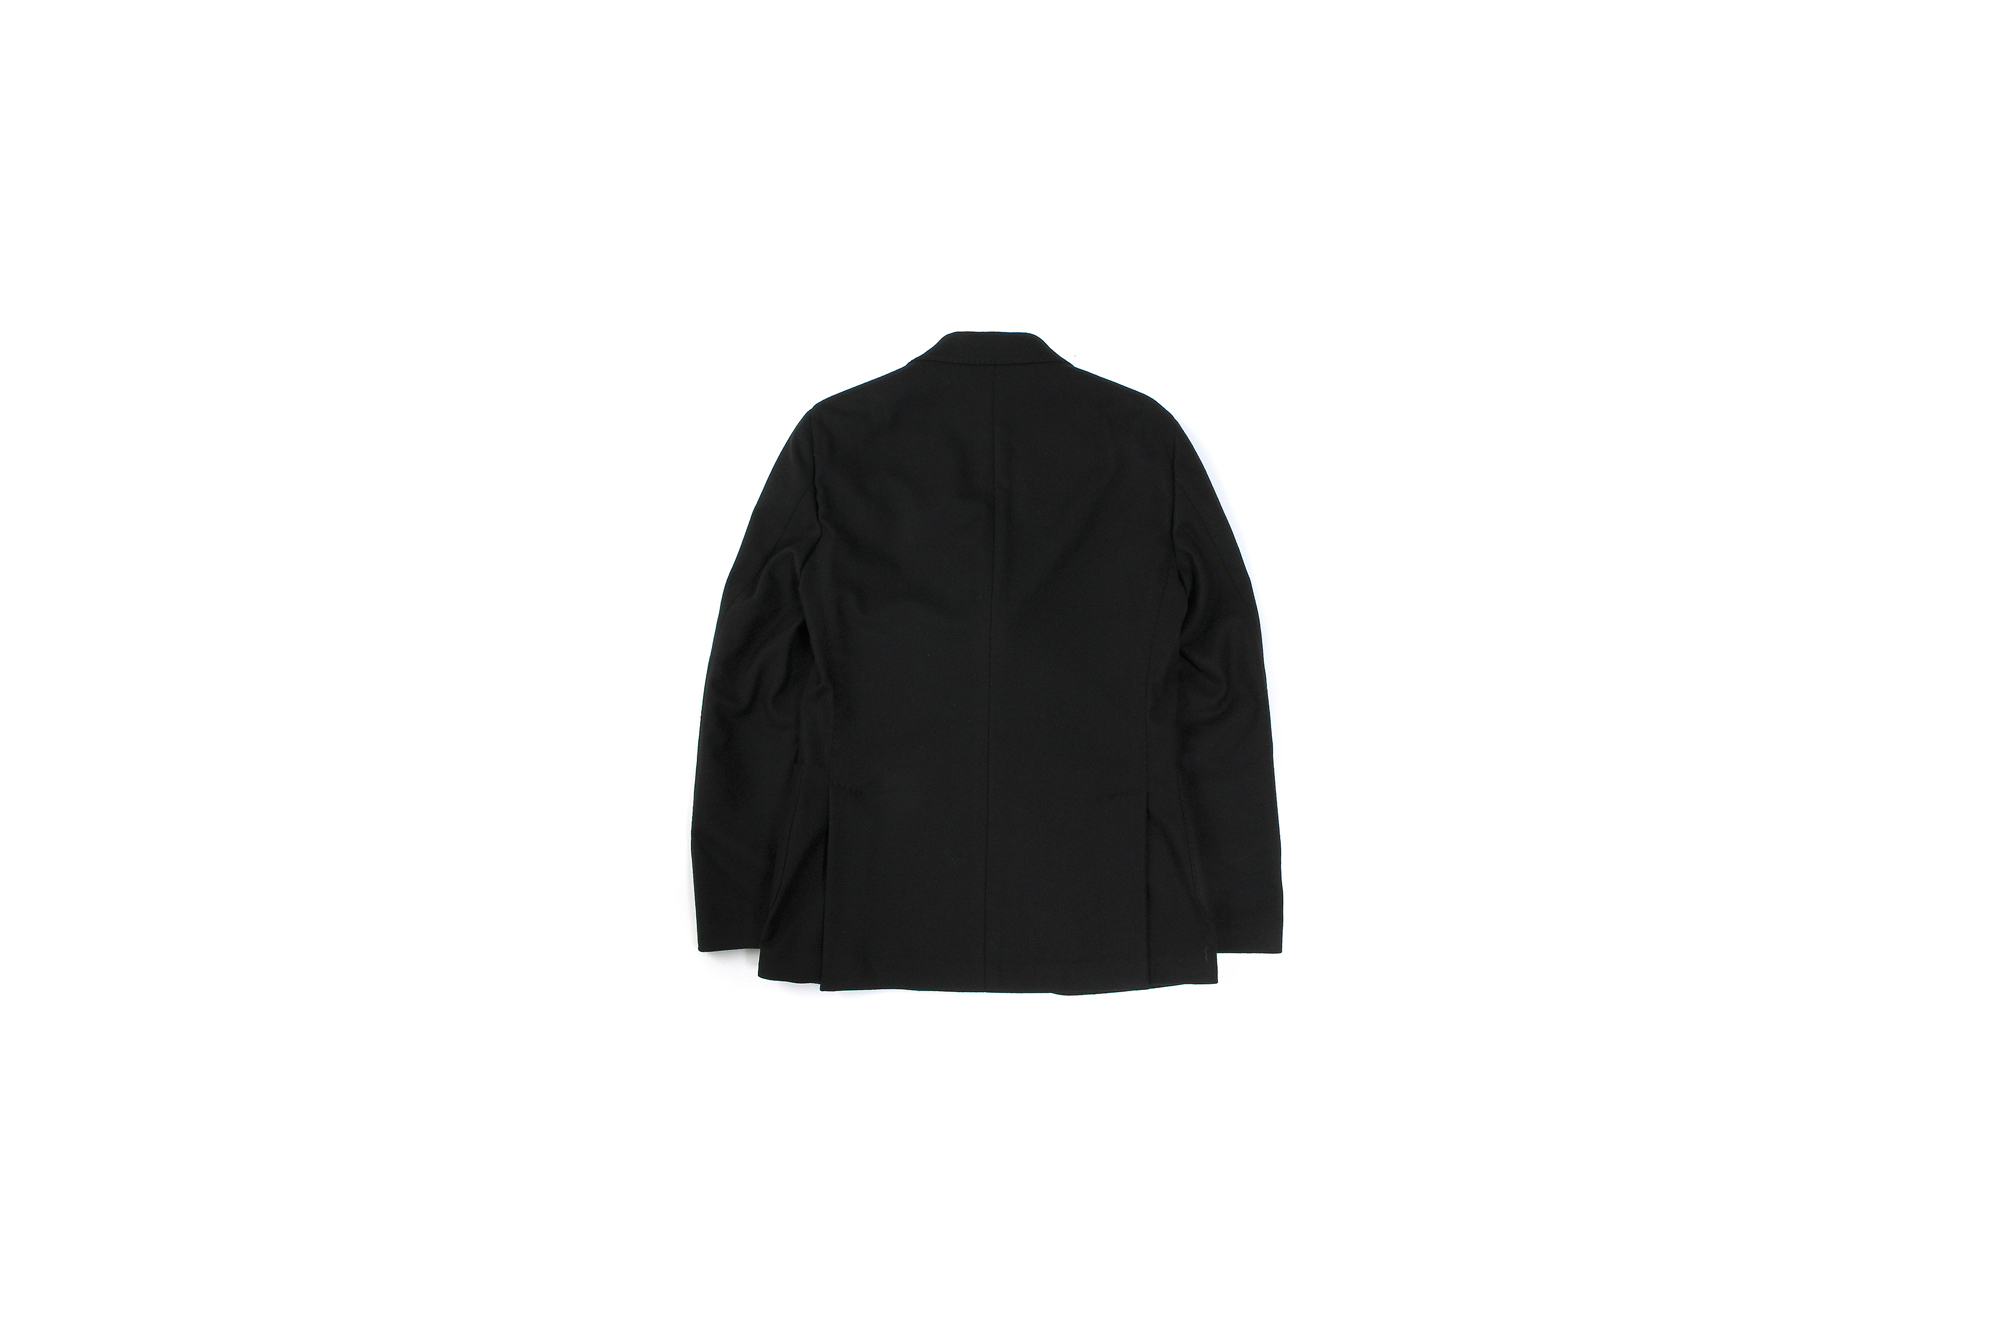 LARDINI (ラルディーニ) EASY WEAR (イージーウエア) Cashmere Jacket カシミア ジャケット BLACK (ブラック・999) Made in italy (イタリア製) 2020秋冬新作 愛知 名古屋 altoediritto アルトエデリットカシミヤジャケット